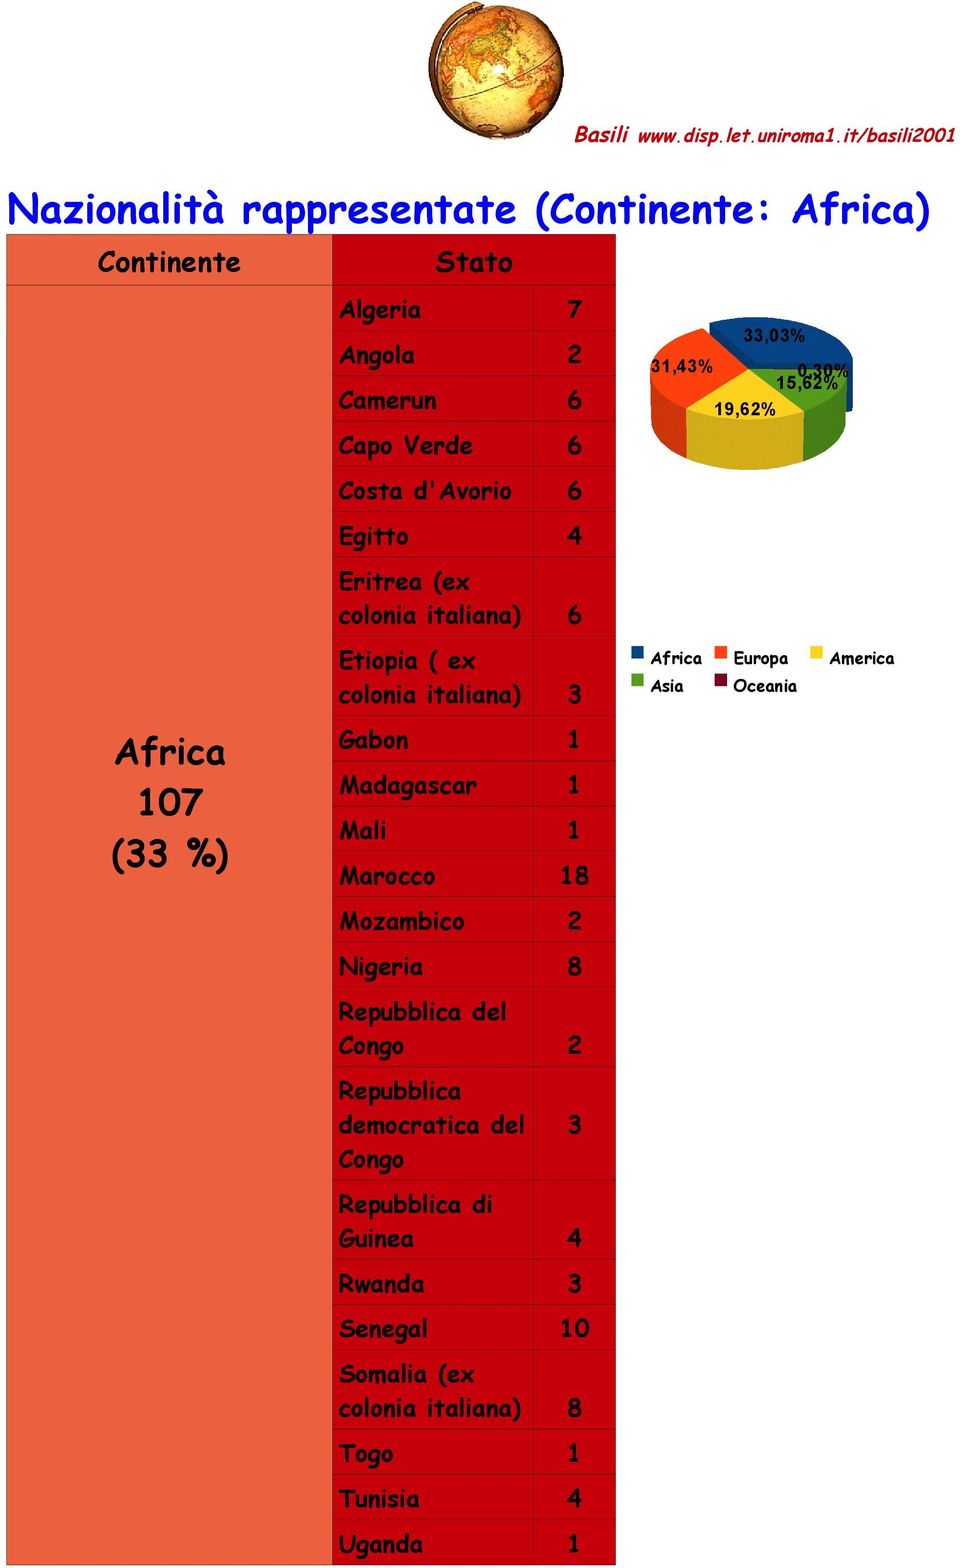 Gabon 1 Madagascar 1 Mali 1 Marocco 18 Mozambico 2 Nigeria 8 Repubblica del Congo 2 Repubblica democratica